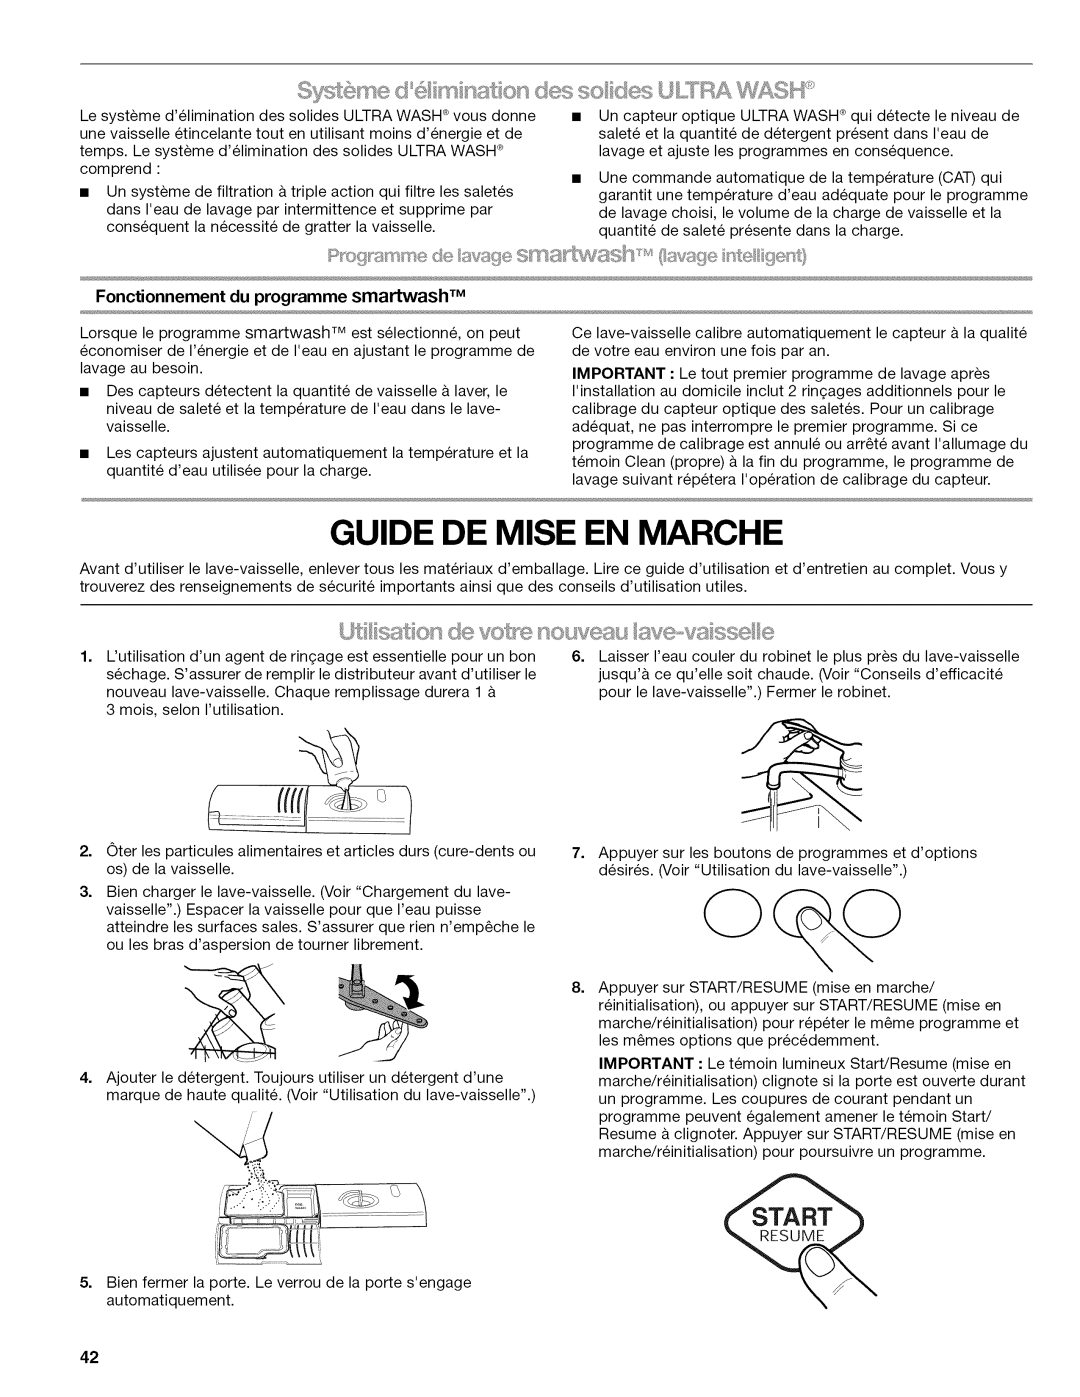 Kenmore 665.1324, 665.1346, 665.1347, 665.1345, 665.77925 manual Guide De Mise En Marche, Fonctionnement du programme smartwash 